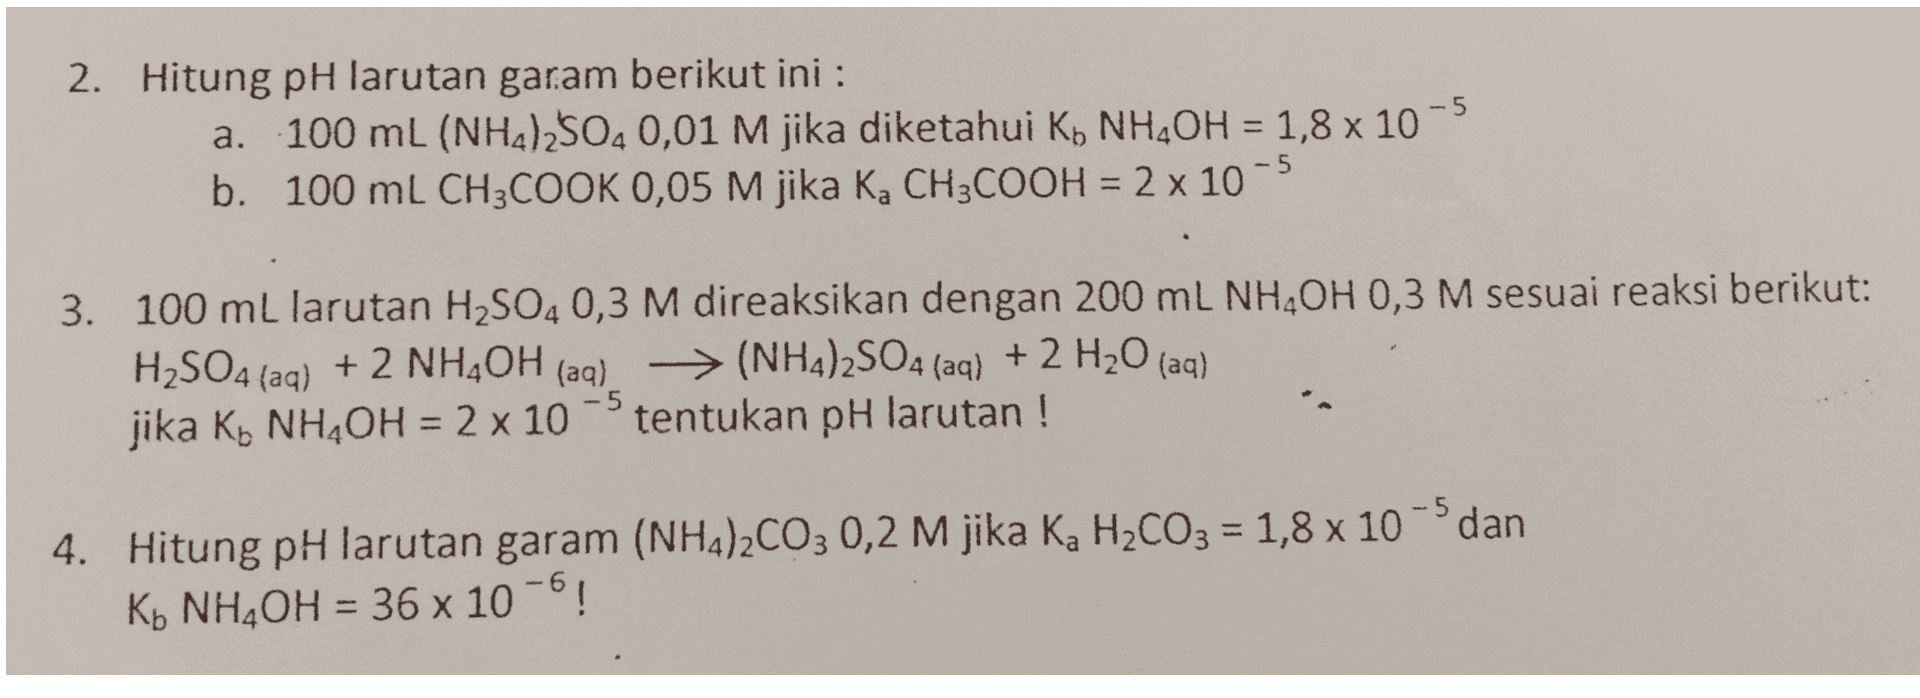 = 2. Hitung pH larutan garam berikut ini : a. 100 mL (NH2)2504 0,01 M jika diketahui Ko NH OH = 1,8 x 10-5 b. 100 mL CH3COOK 0,05 M jika K, CH3COOH = 2 x 10-5 3. 100 mL larutan H2SO4 0,3 M direaksikan dengan 200 mL NHAOH 0,3 M sesuai reaksi berikut: H2SO4 (aq) + 2 NH4OH (aq) → (NH4)2SO4 (aq) + 2 H20 (aq) > jika Ko NH,OH = 2 x 10 tentukan pH larutan ! -5 = 4. Hitung pH larutan garam (NH4)2CO3 0,2 M jika Ka H2CO3 = 1,8 x 10 dan K+ NH4OH = 36 x 10-6! = 